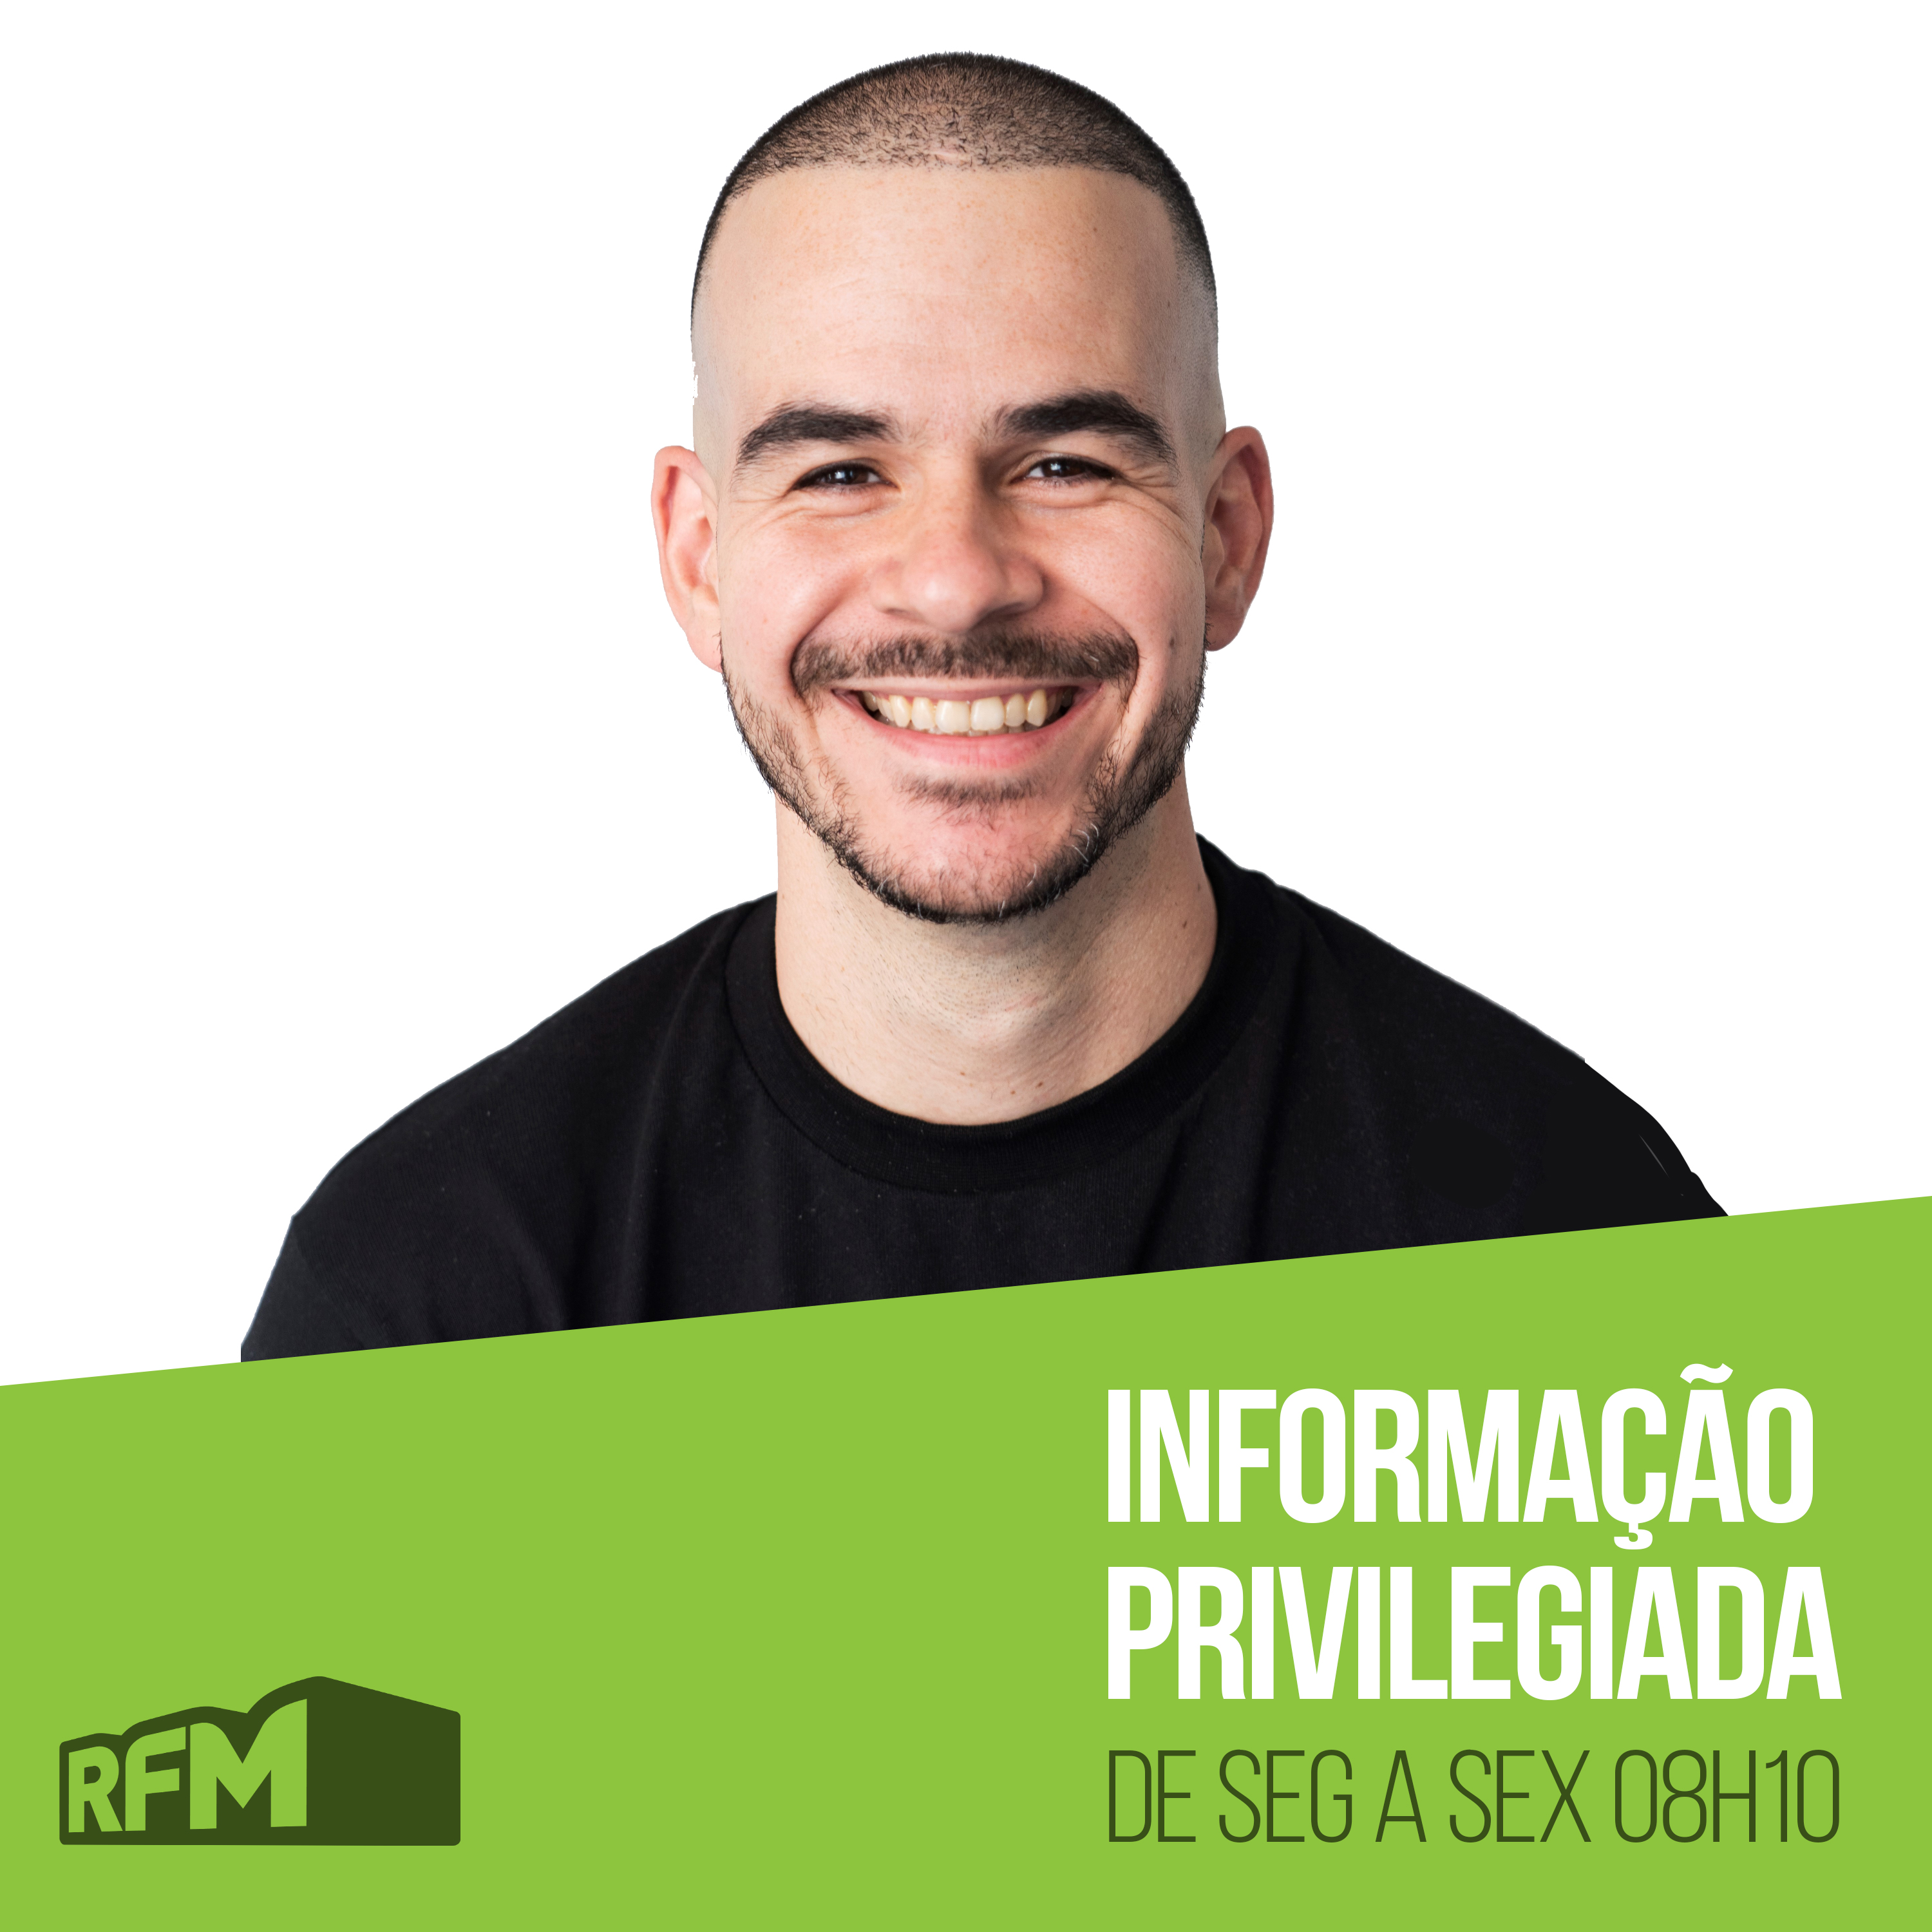 RFM - INFORMAÇÃO PRIVILEGIADA: TRANSFORMERS VERSÃO CAFÉ DA MANHÃ